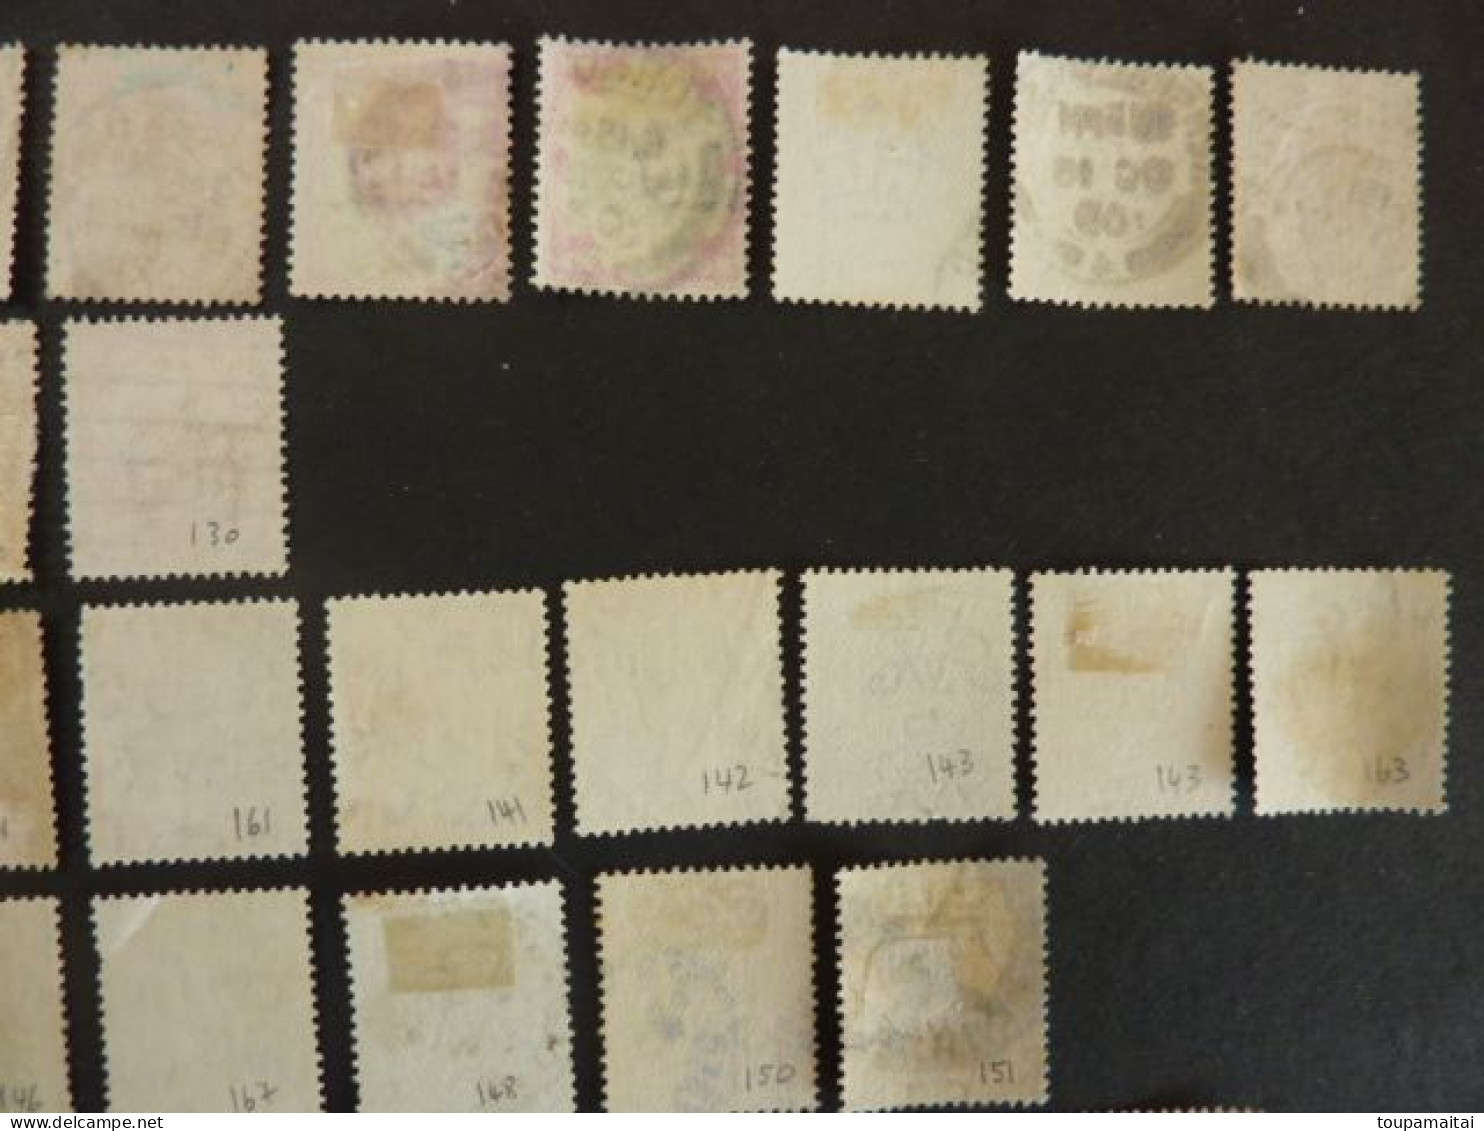 GRANDE BRETAGNE, divers timbres des années 1902 à 1951, LOT de 70 TIMBRES OBLITERES, Edward VII à Georges VI